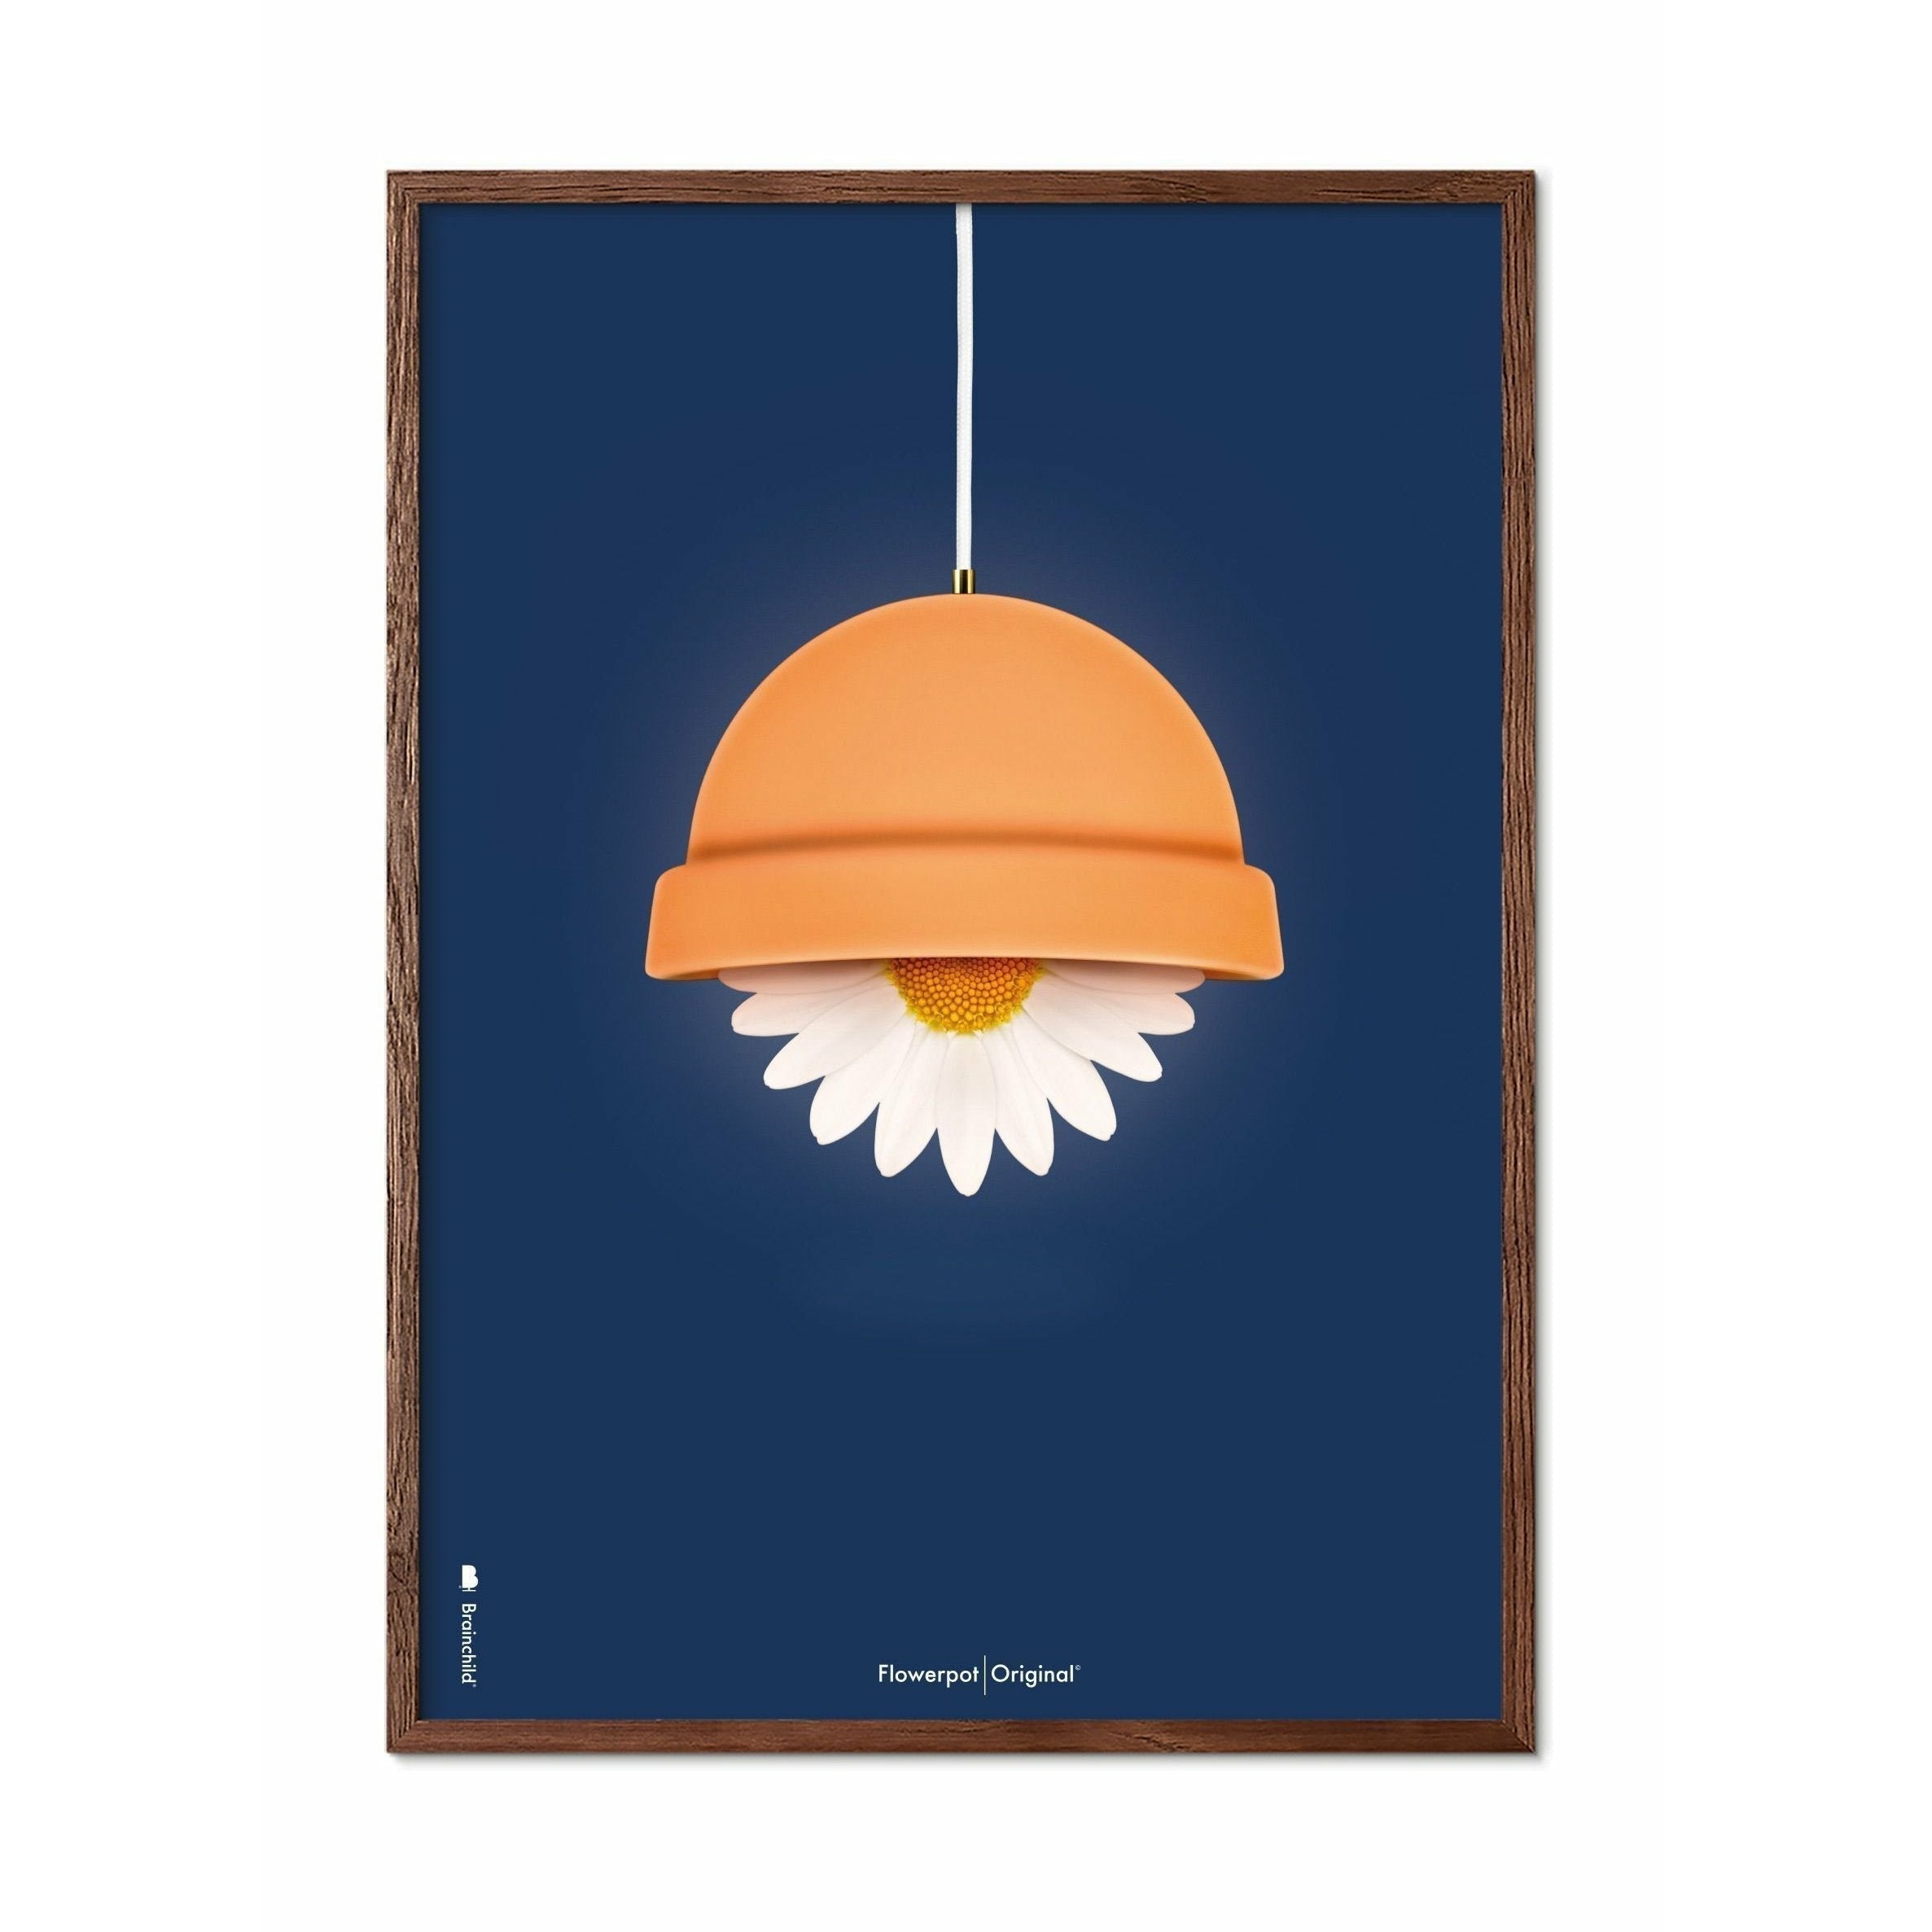 Brainchild Flowerpot Classic Poster, Dark Wood Frame 30x40 Cm, Dark Blue Background